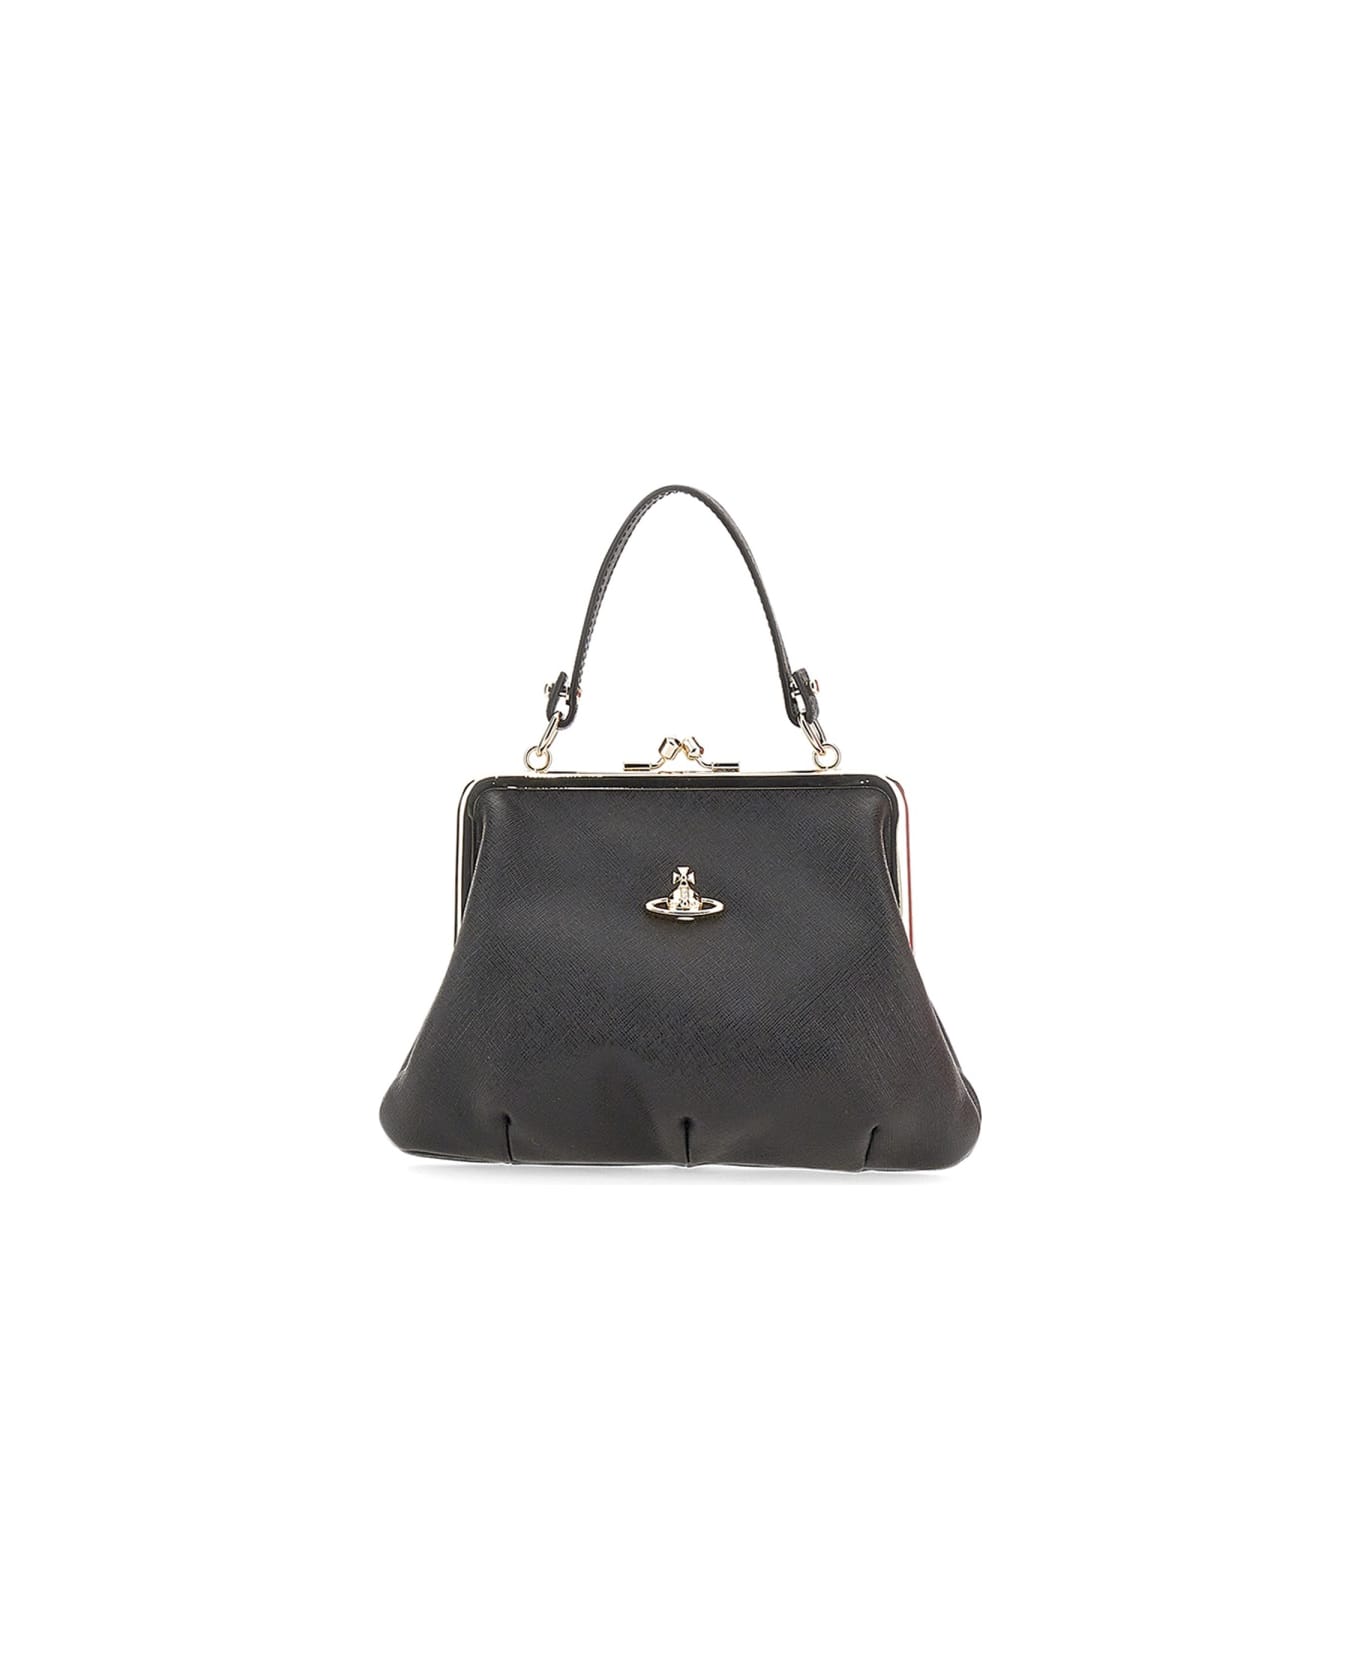 Vivienne Westwood Granny Frame Bag - BLACK